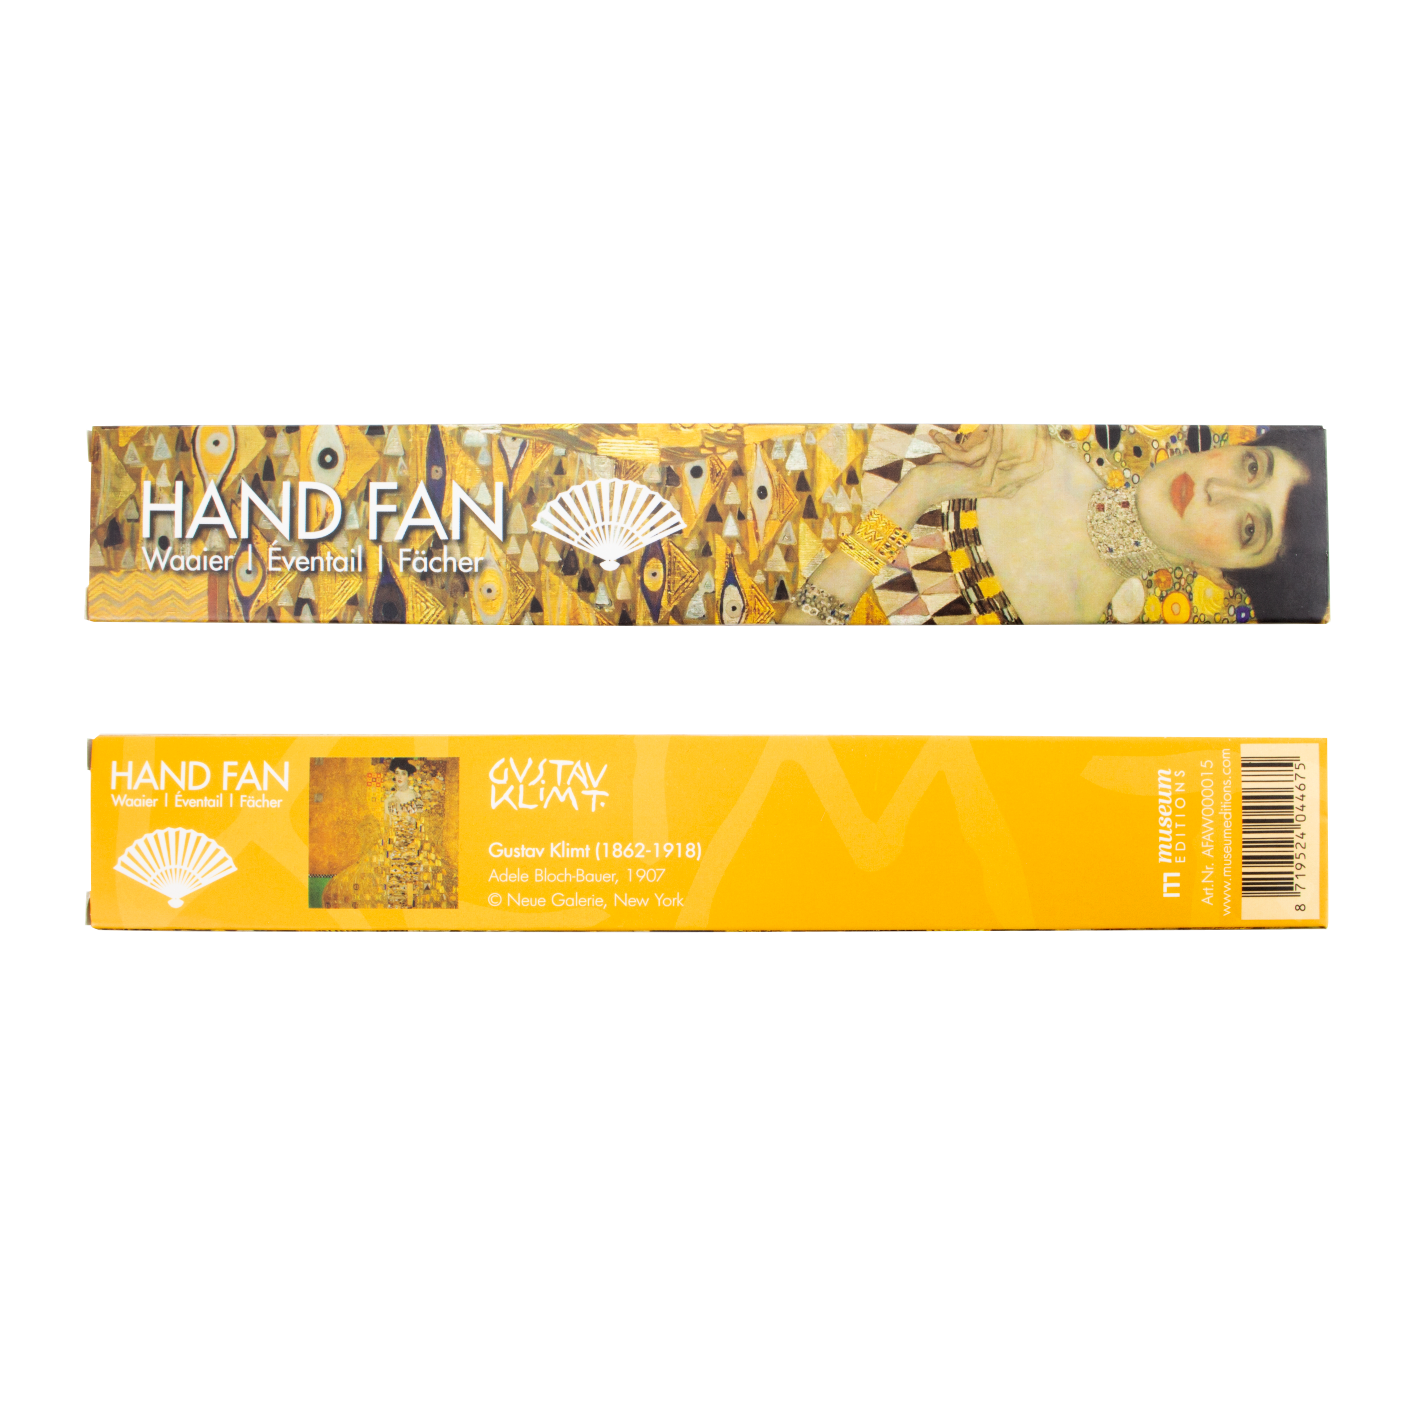 Hand Fan, Bamboo,  Gustav Klimt, Adele Bloch-Bauer